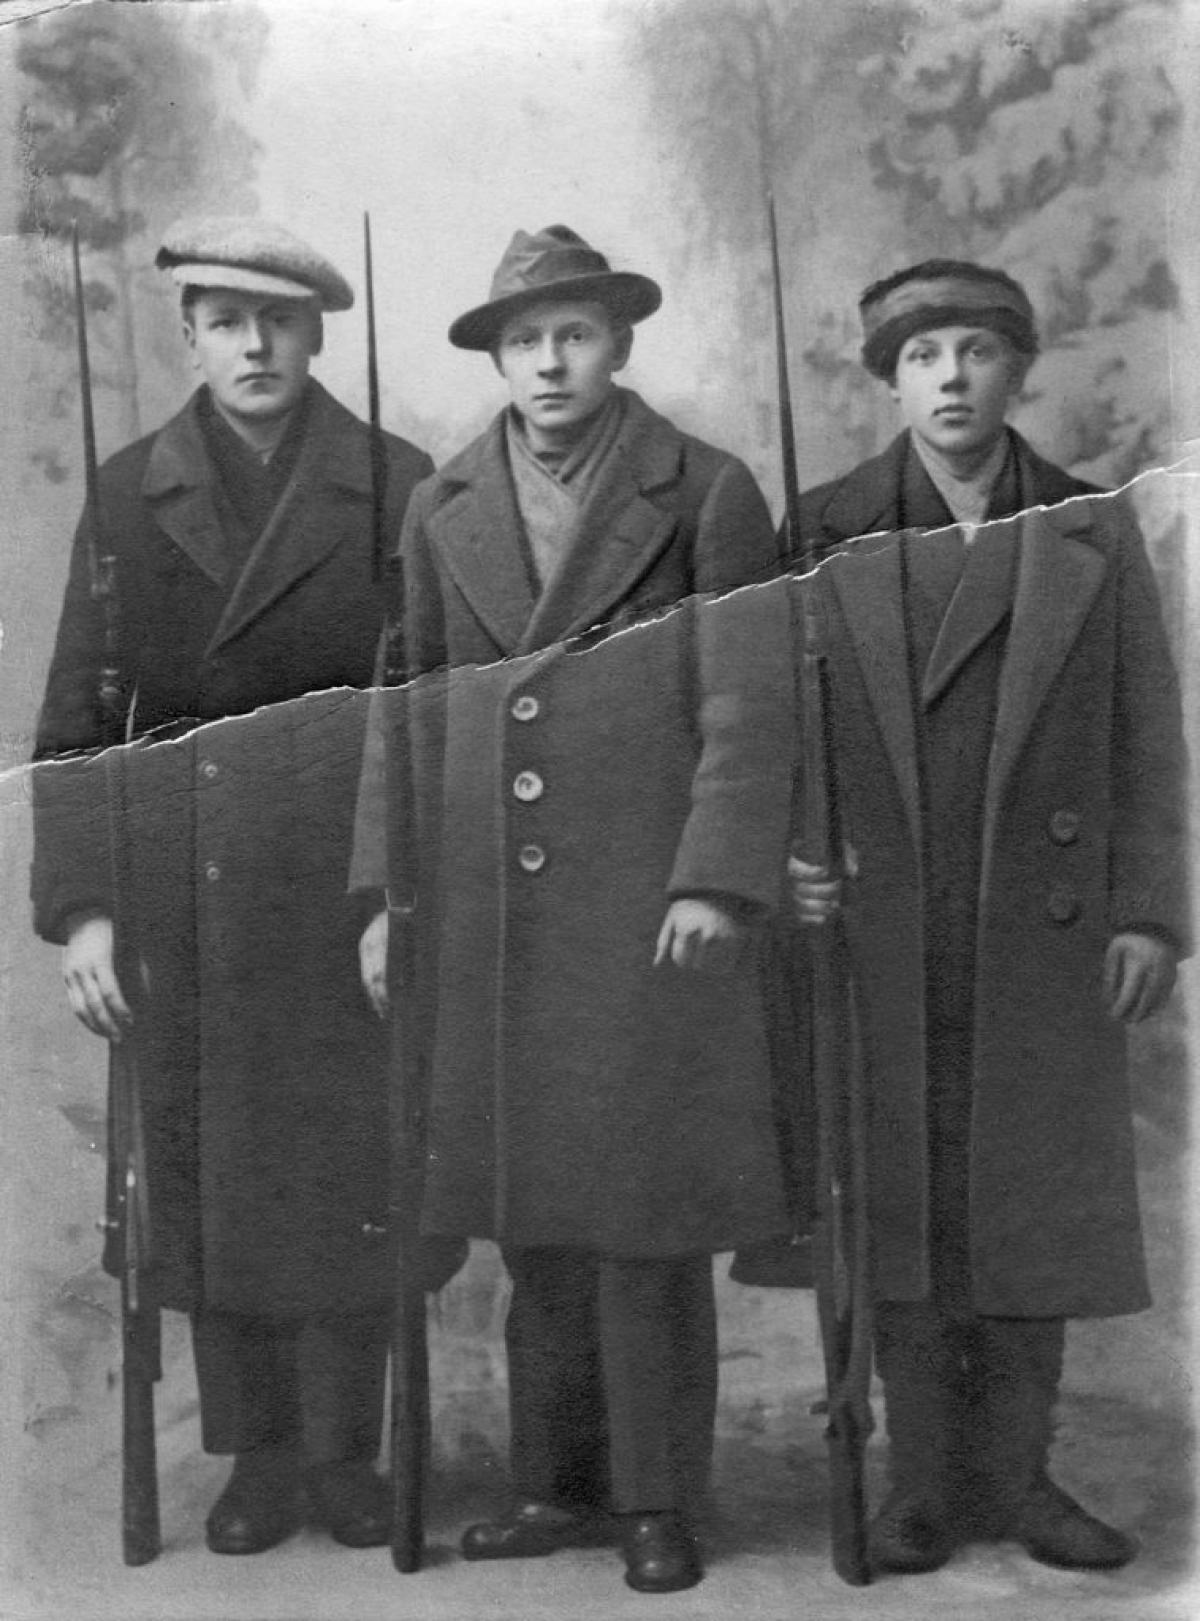 Kolme pitkiin takkeihin pukeutunutta punakaartilaista poseeraa muotokuvassa kiväärit käsissään.